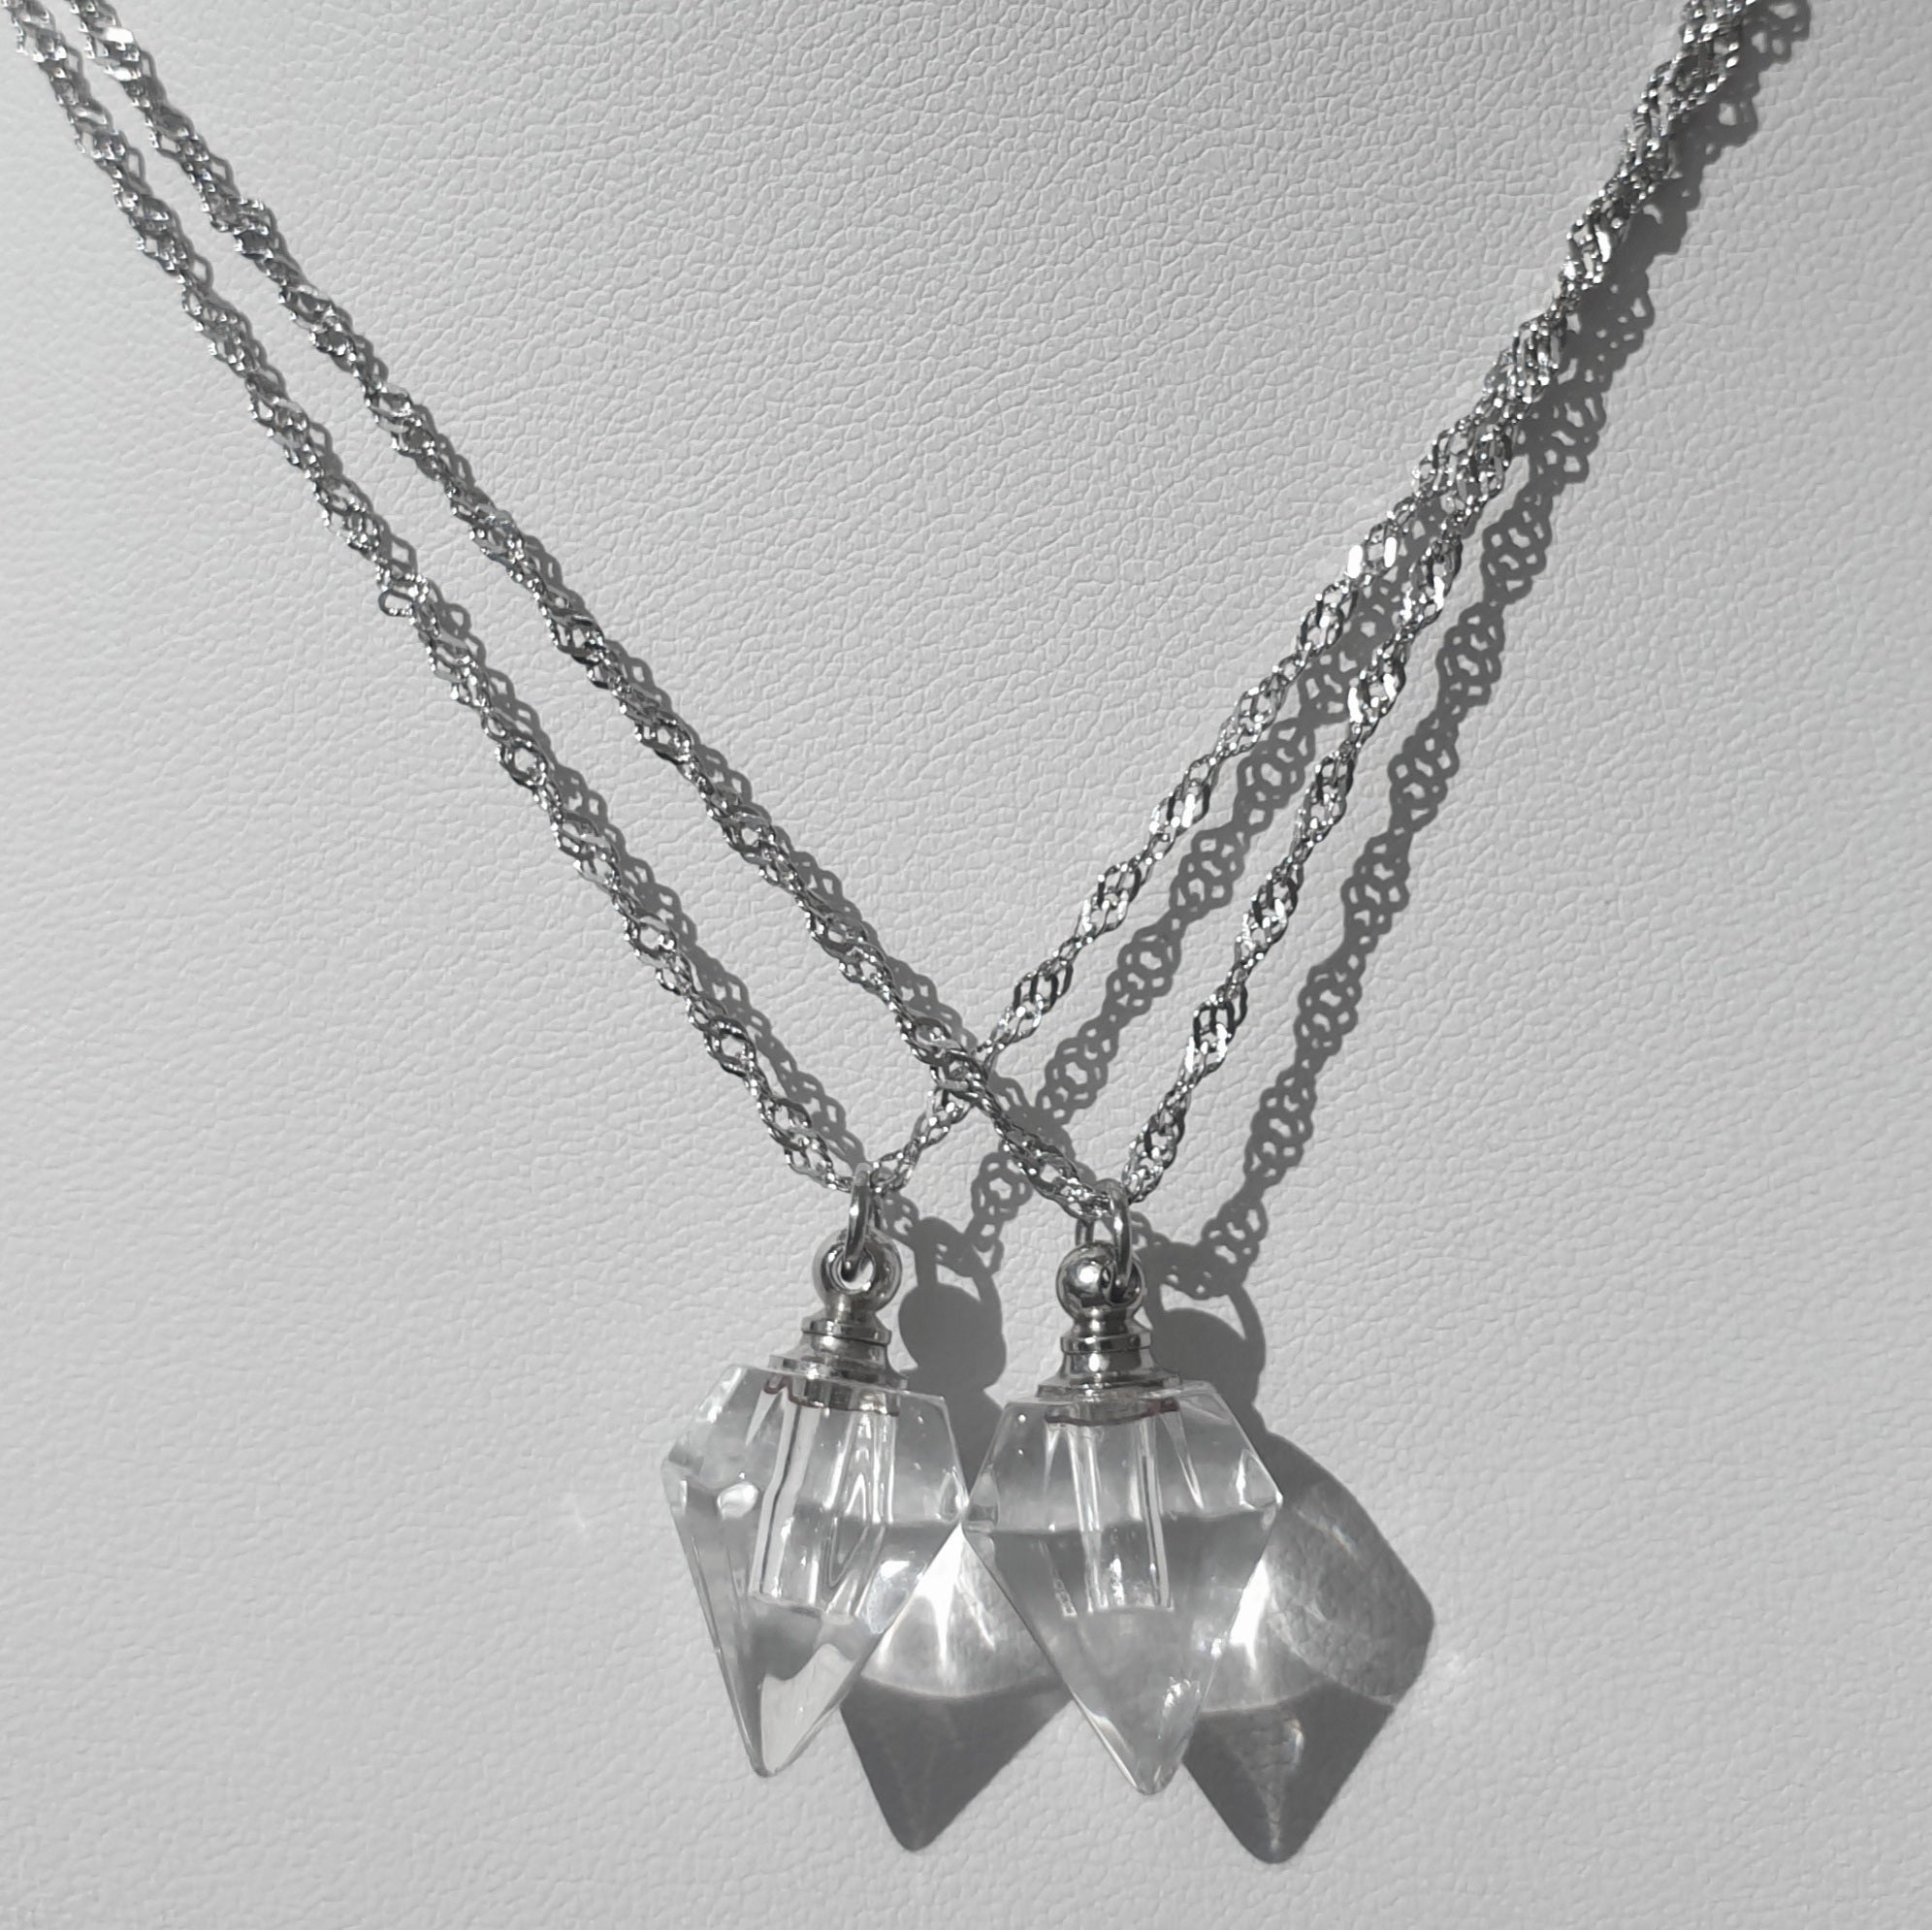 <transcy>Avocado necklaces made of stainless steel</transcy>